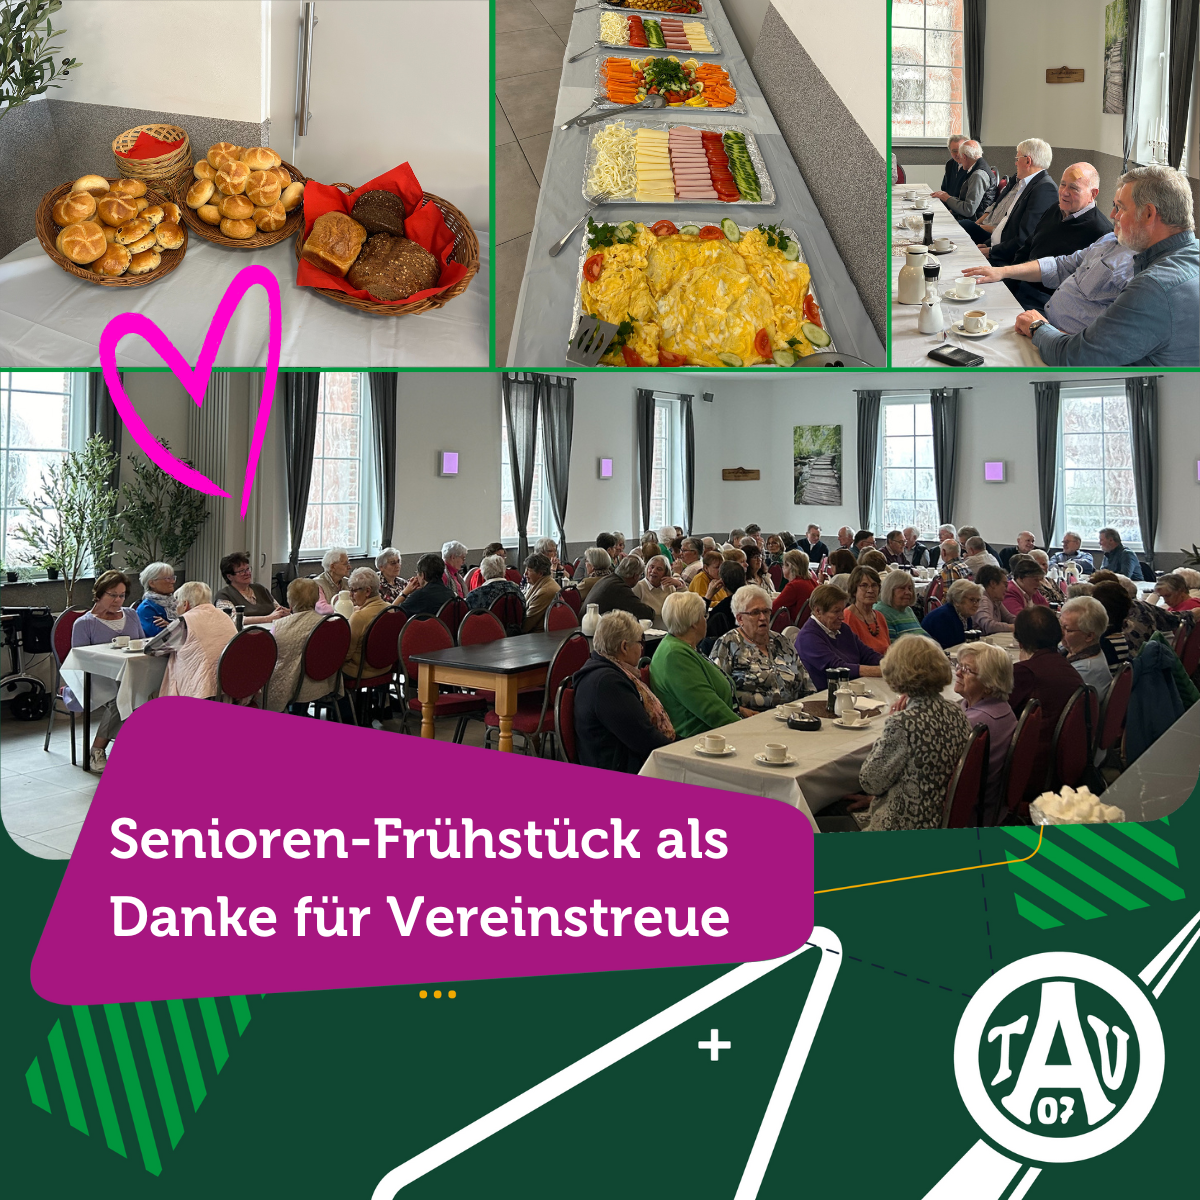 Senioren-Frühstück des TV Aldekerk als Dankeschön für Vereinstreue